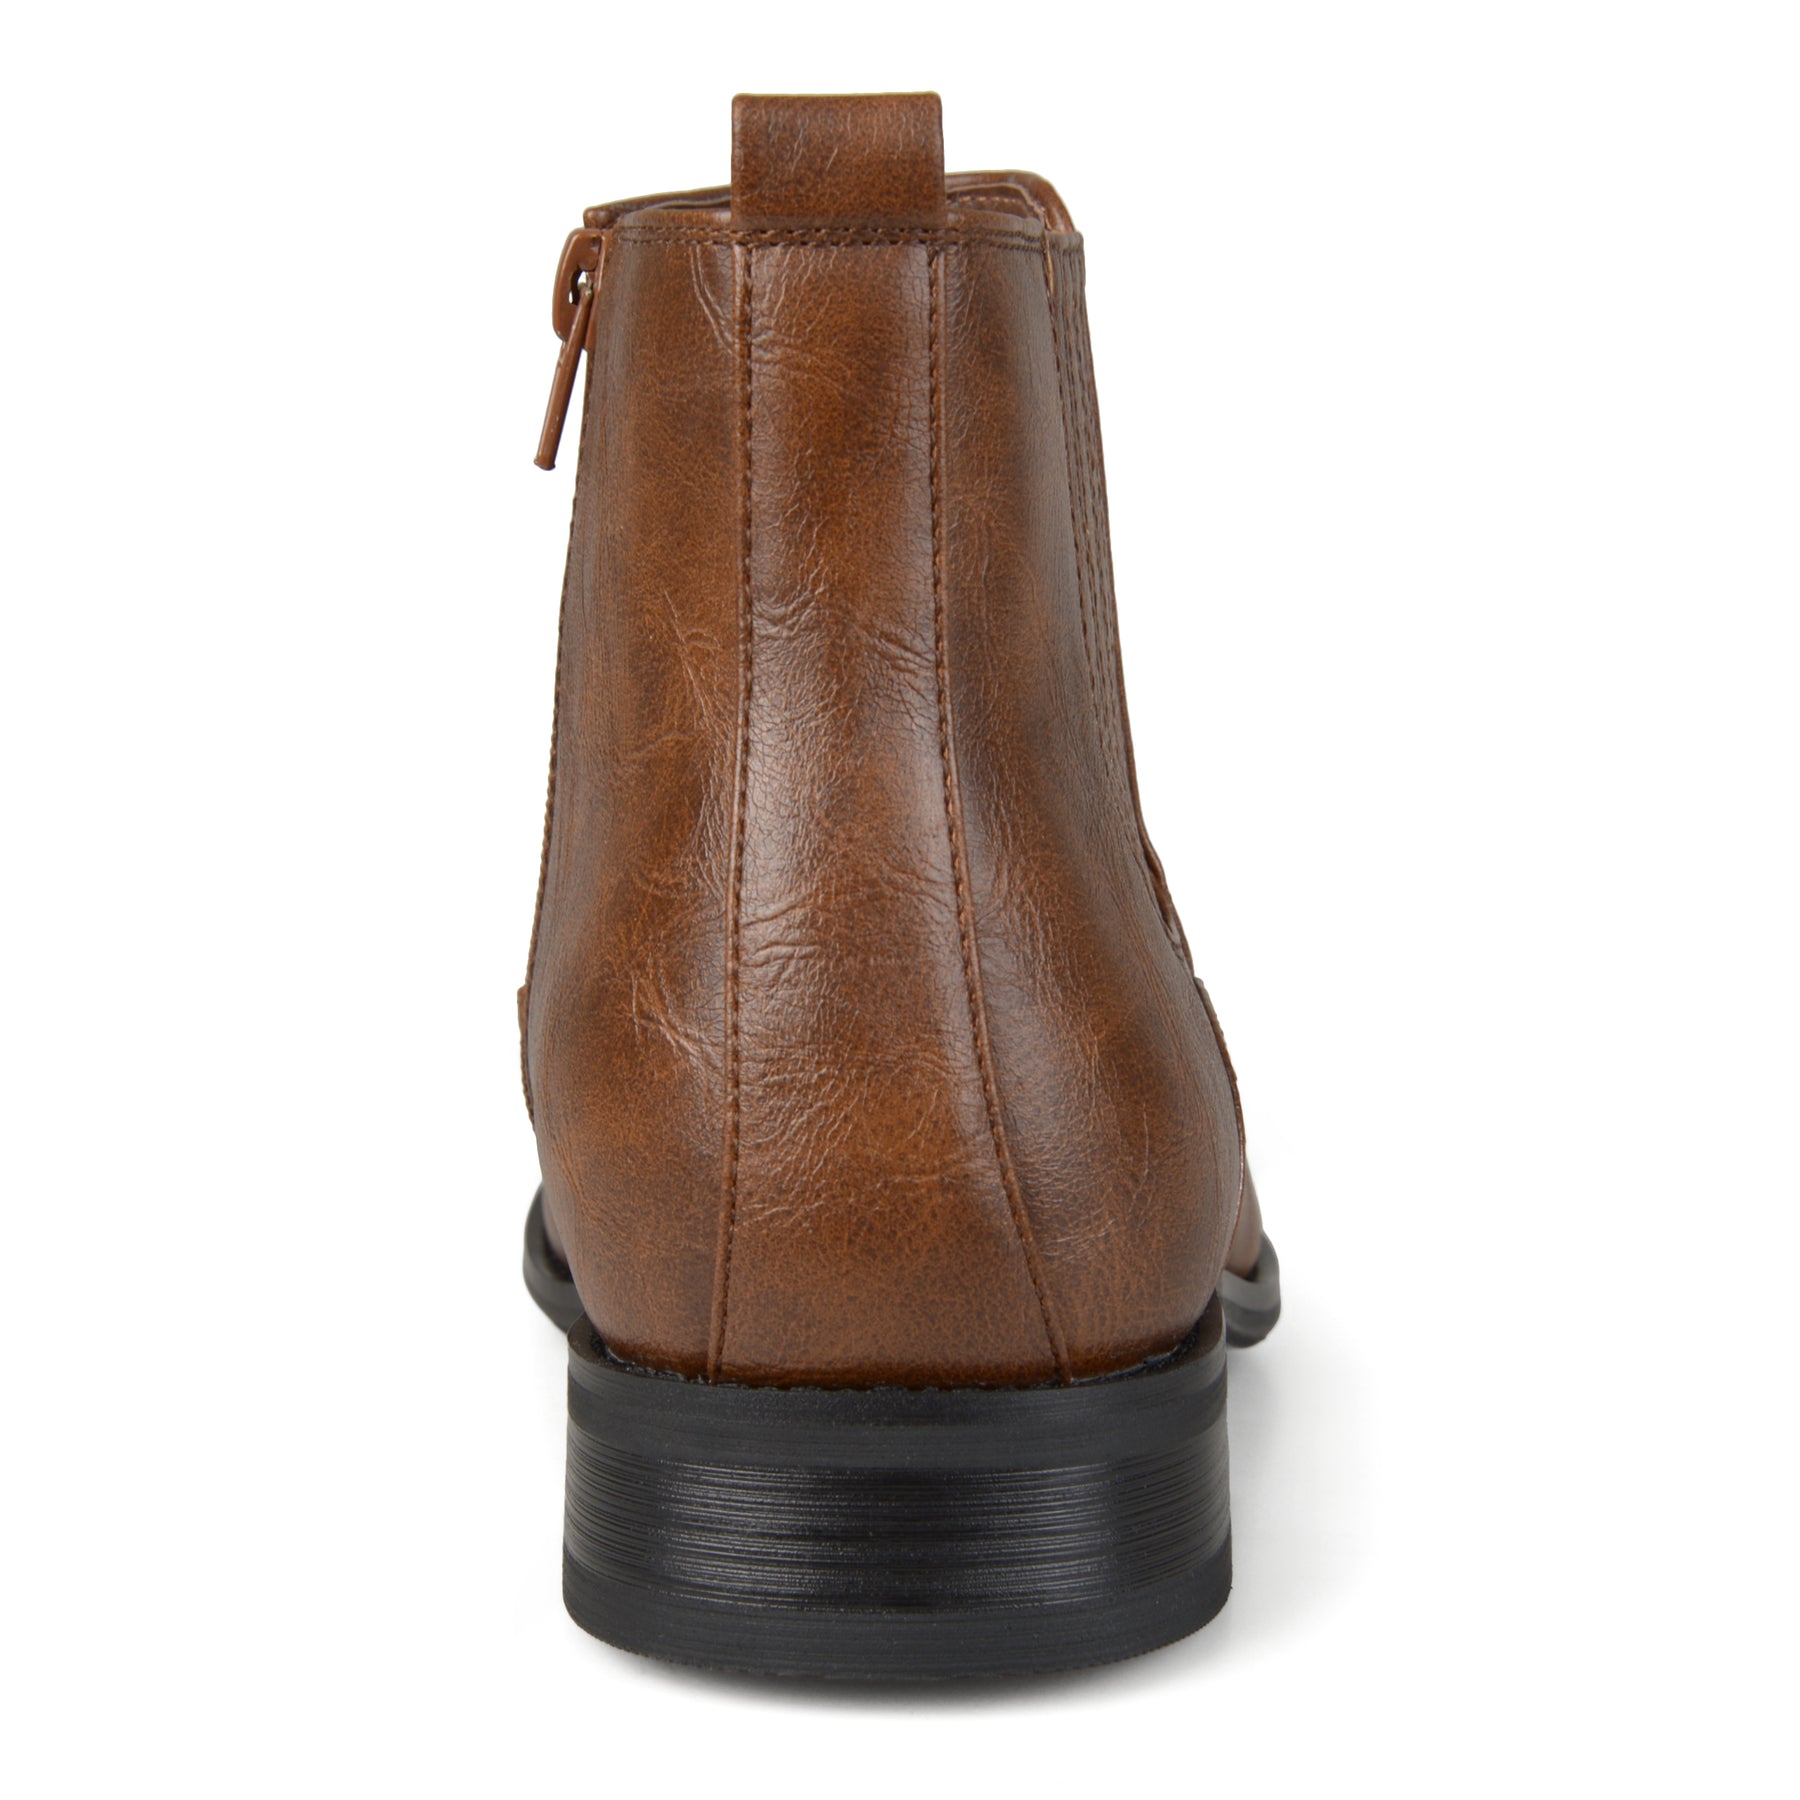 Vance Co. Men's Wide Width Alex Chelsea Boot – Shop Premium Outlets